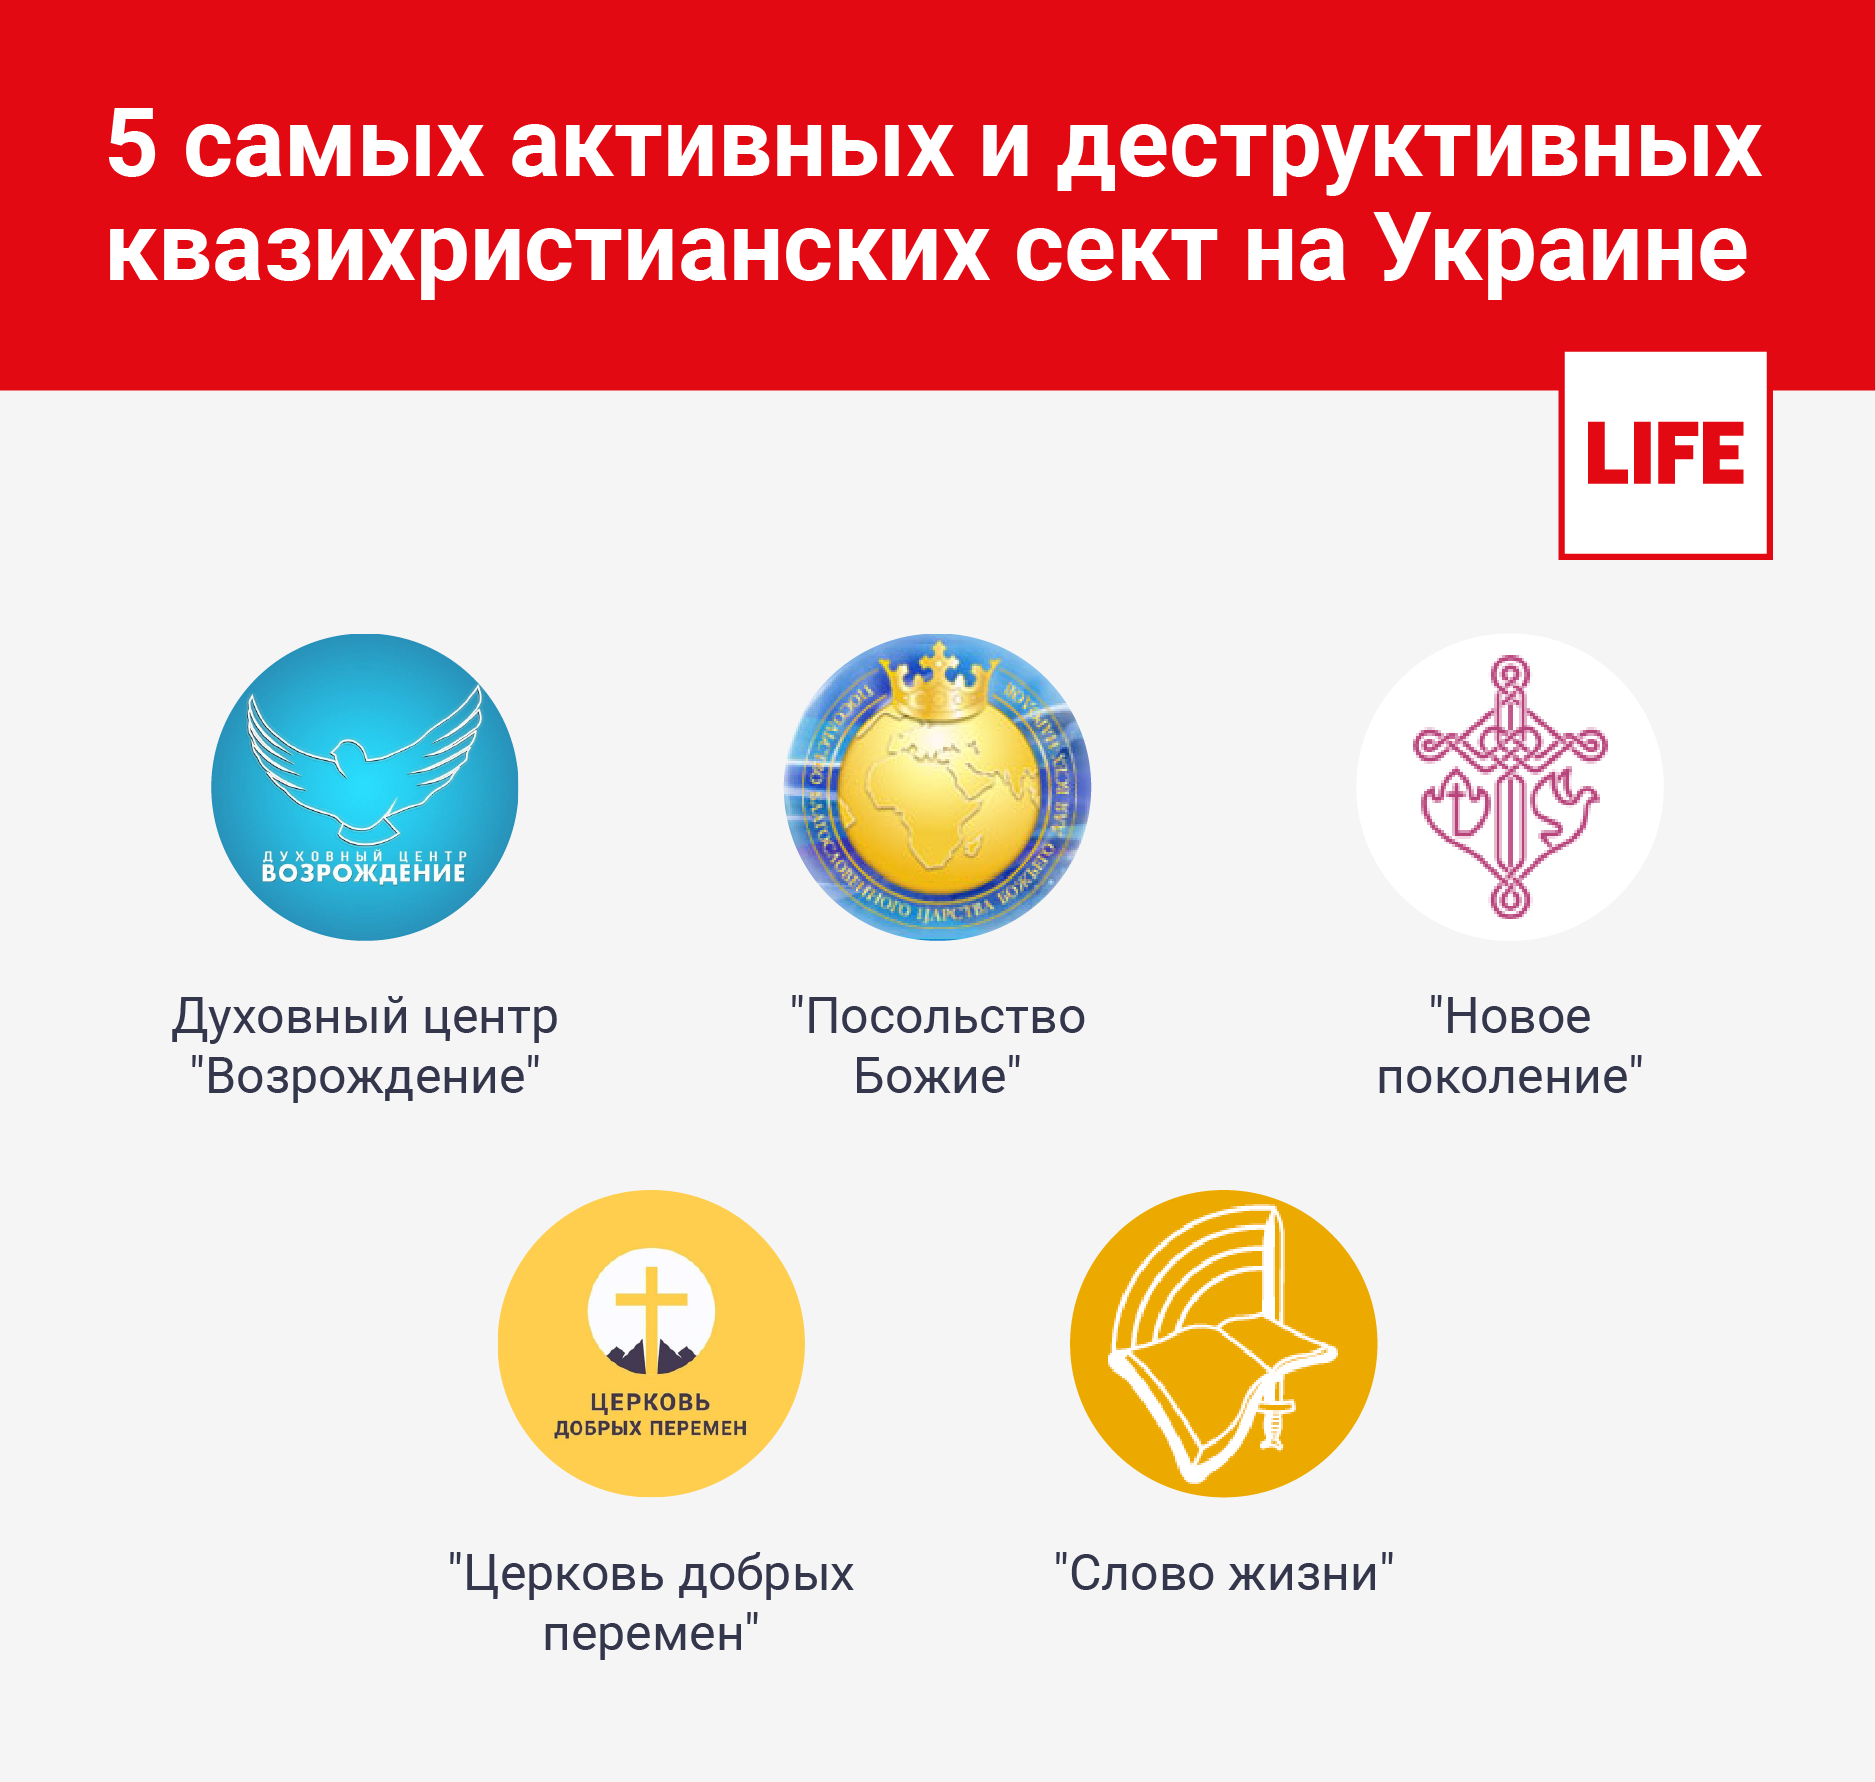 5 самых активных и деструктивных квазихристианских сект на Украине. Инфографика © LIFE